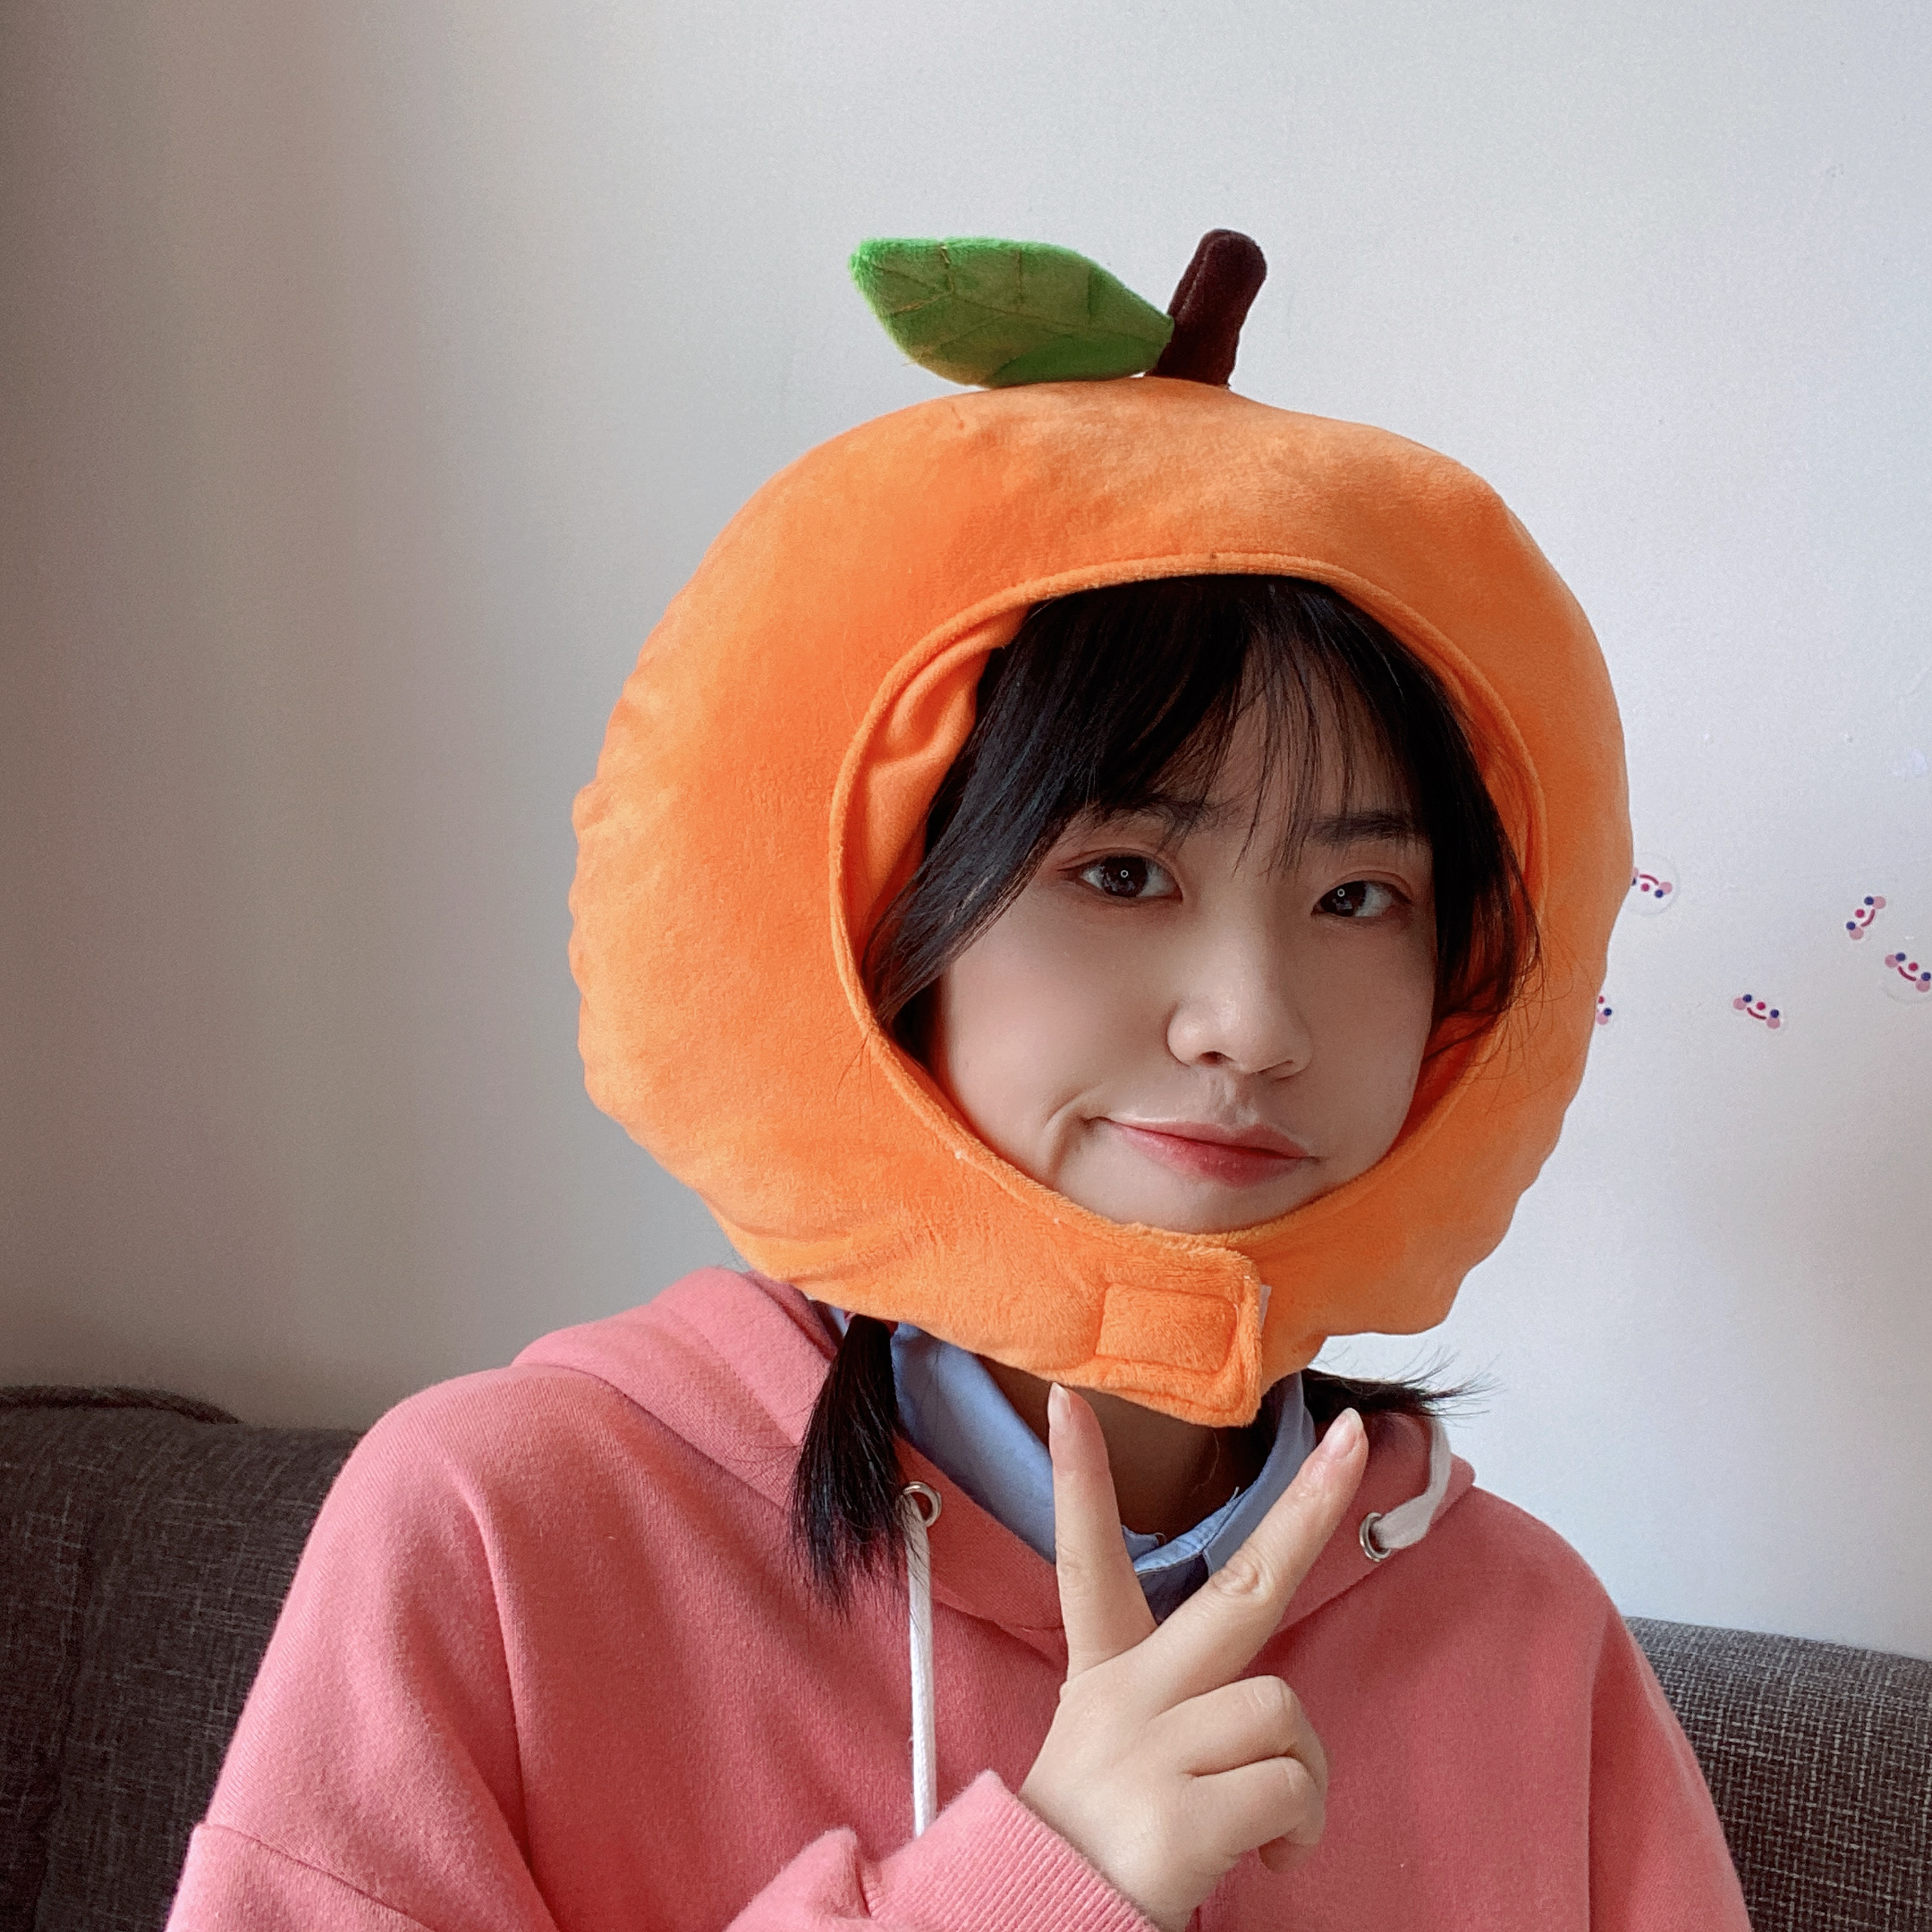 日韩ins少女心可爱创意水果橘子橙子头套帽子礼物拍照派对道具